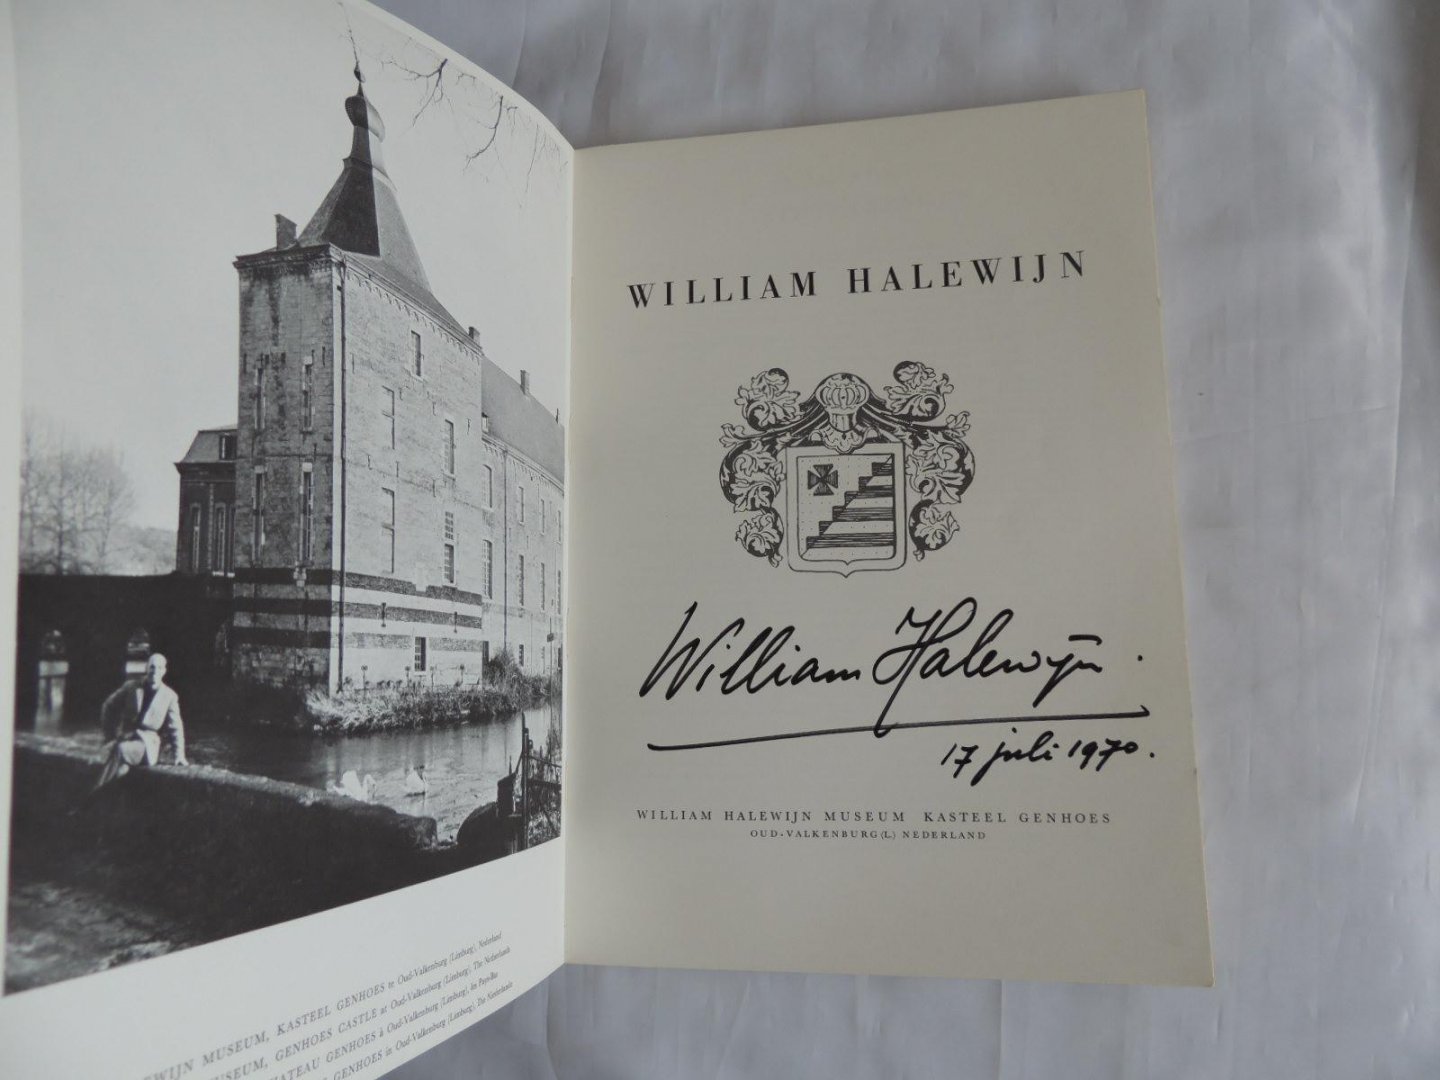 William Halewijn Museum Kasteel Genhoes Oud-Valkenburg - William Halewijn Museum Kasteel Genhoes Oud-Valkenburg - 1966